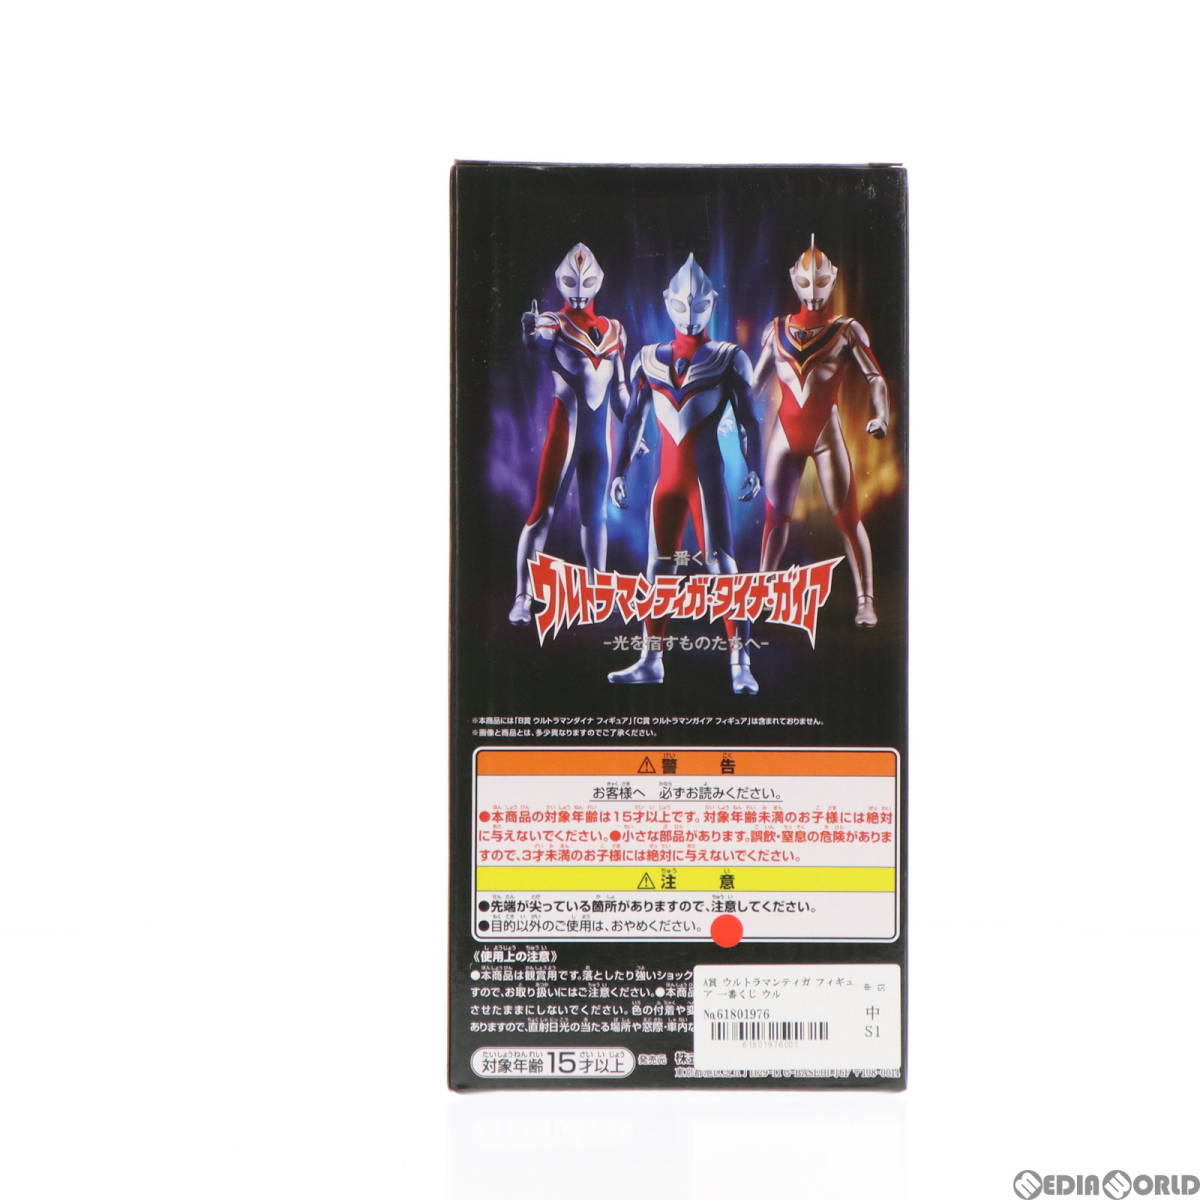 [ б/у ][FIG]A. Ultraman Tiga фигурка самый жребий Ultraman Tiga * Dyna * Gaya - свет ... было использовано ...- приз Bandai 